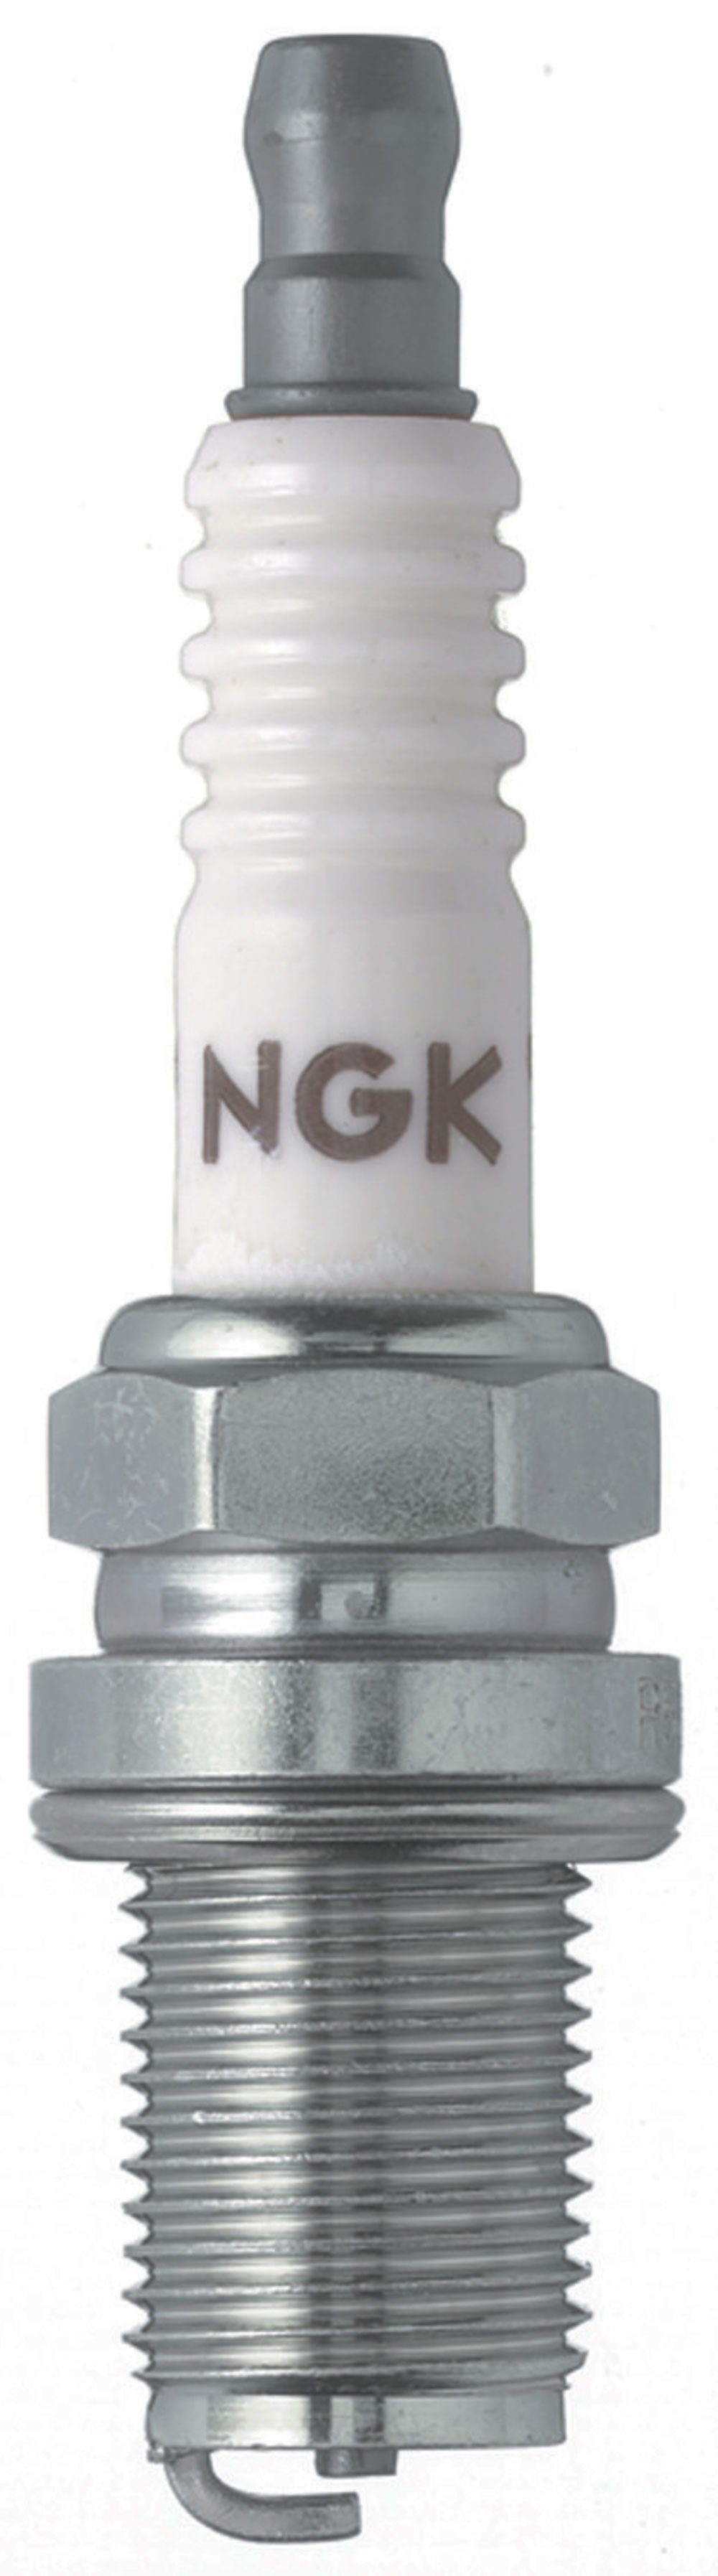 NGK-R6601-11 #1